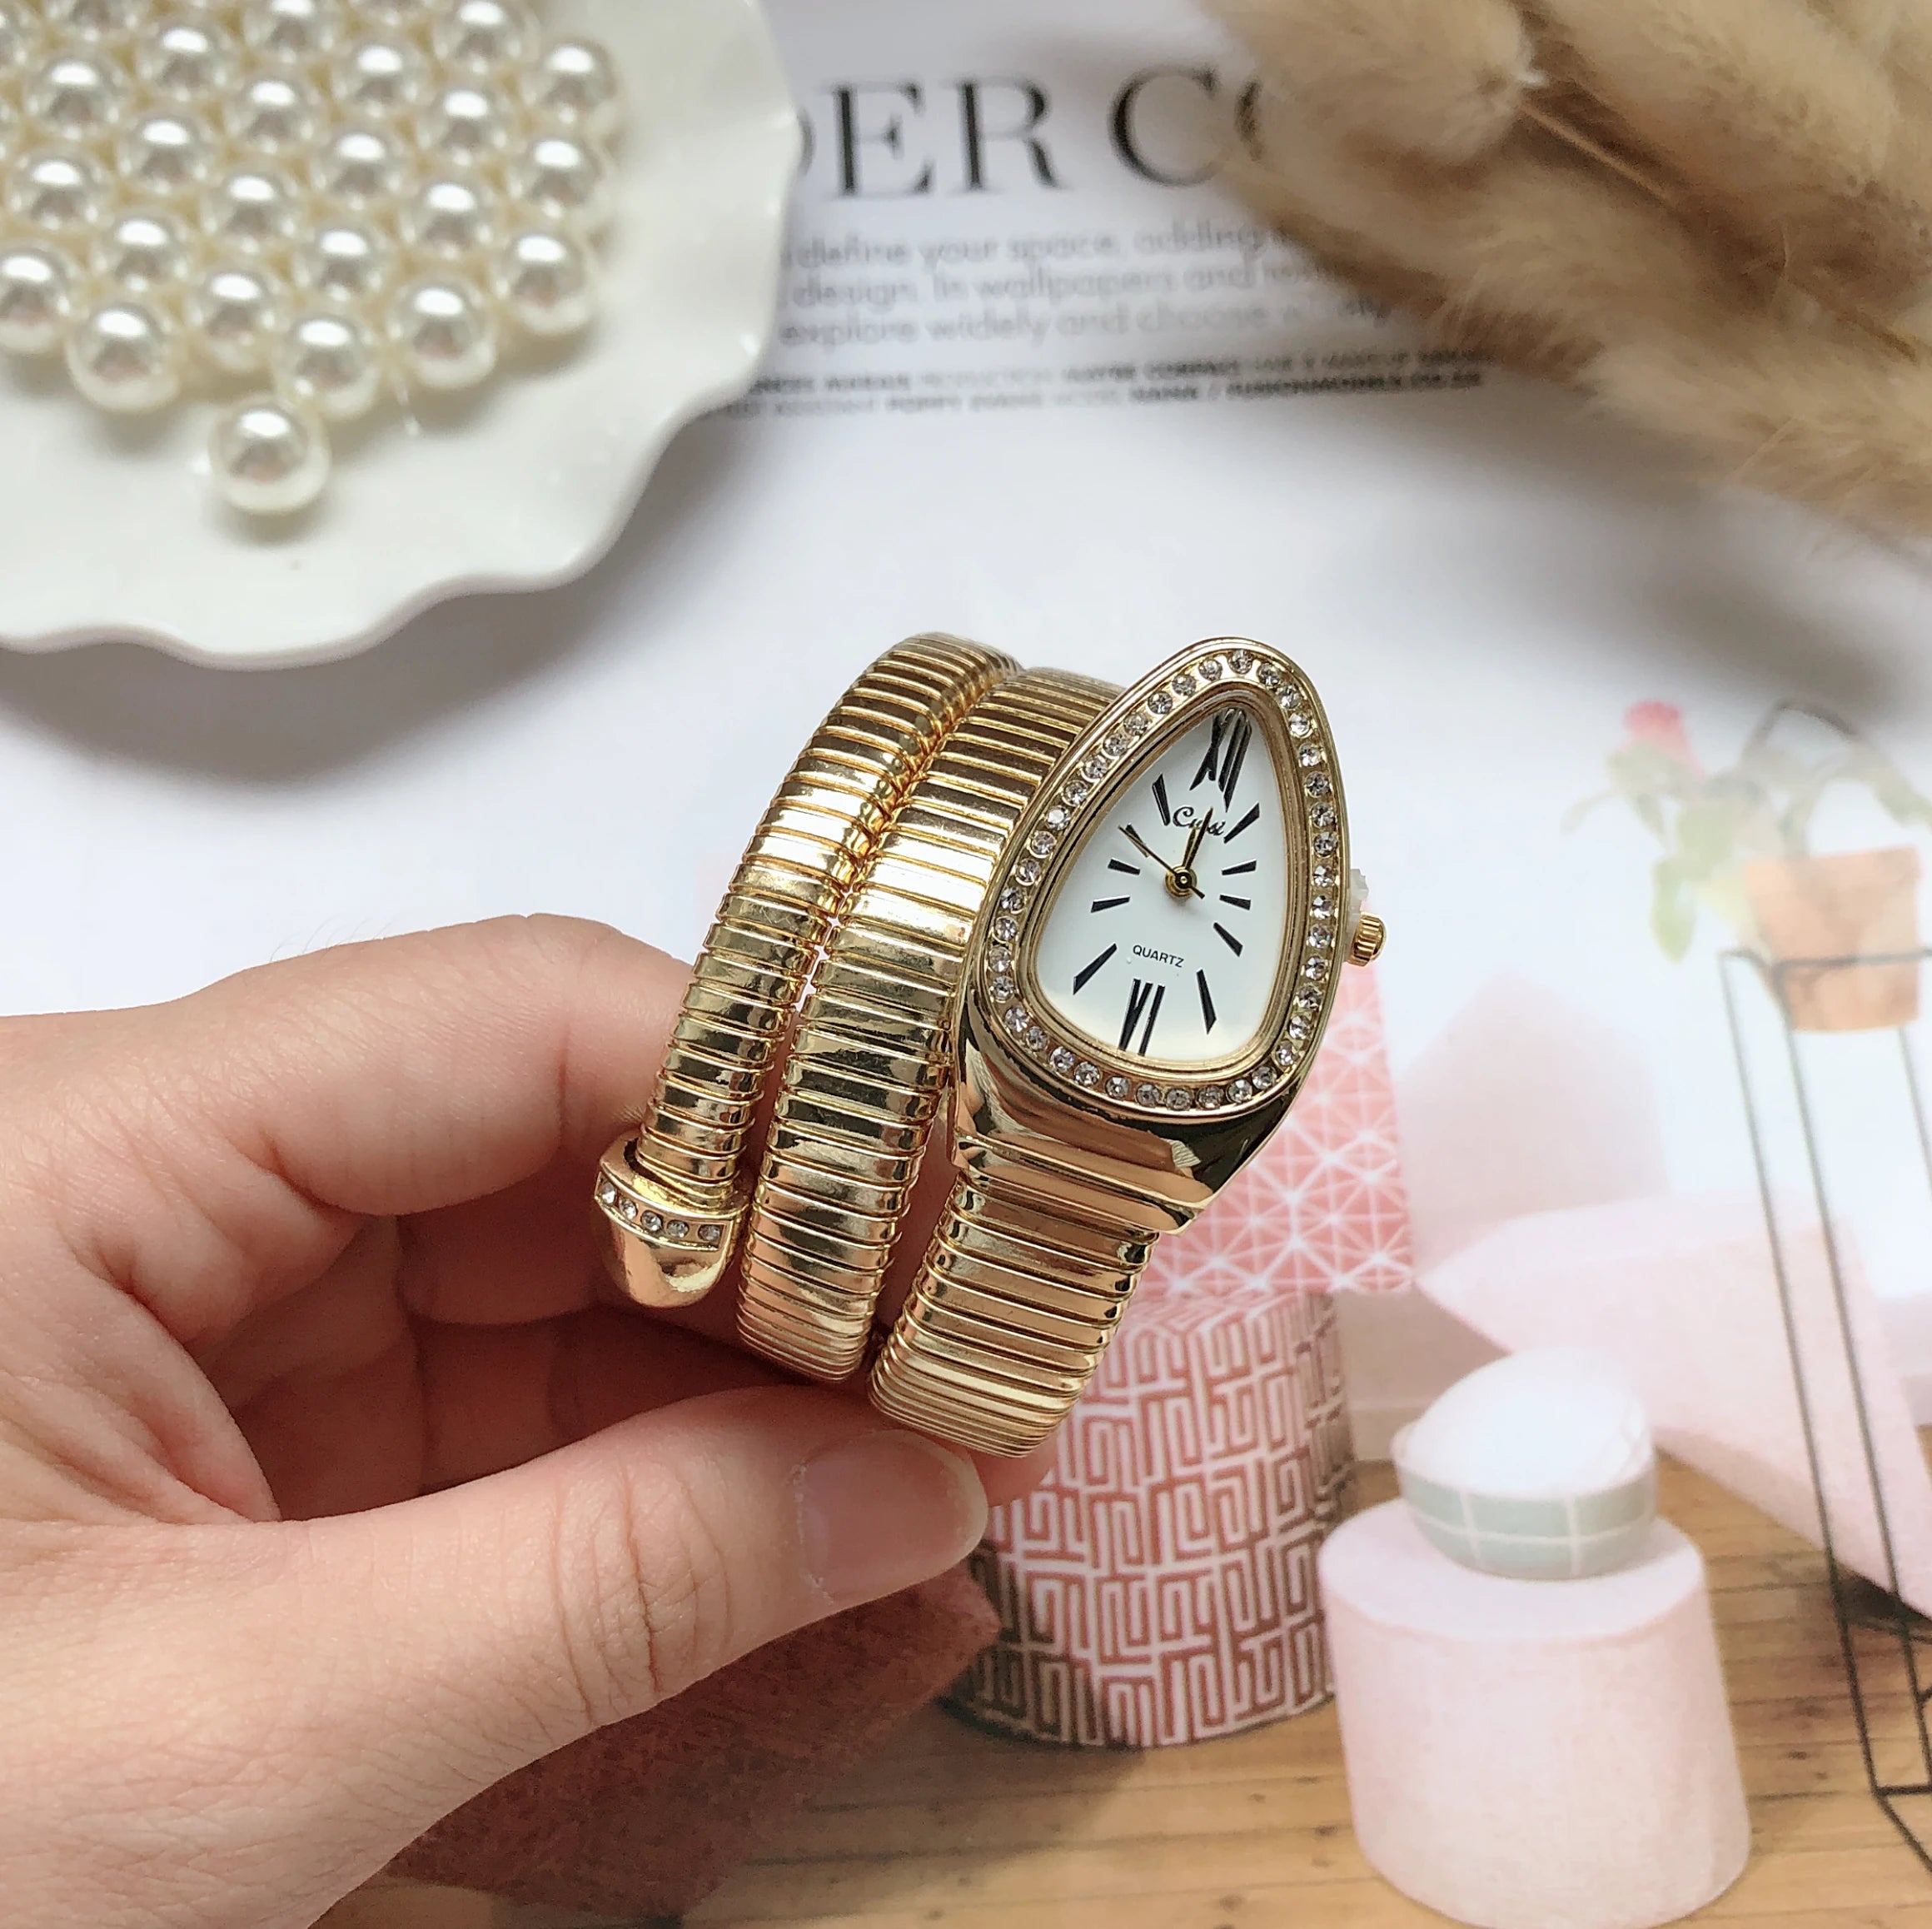 Luxurious Women's Gold Snake Watch with Diamond Detailing  OurLum.com   